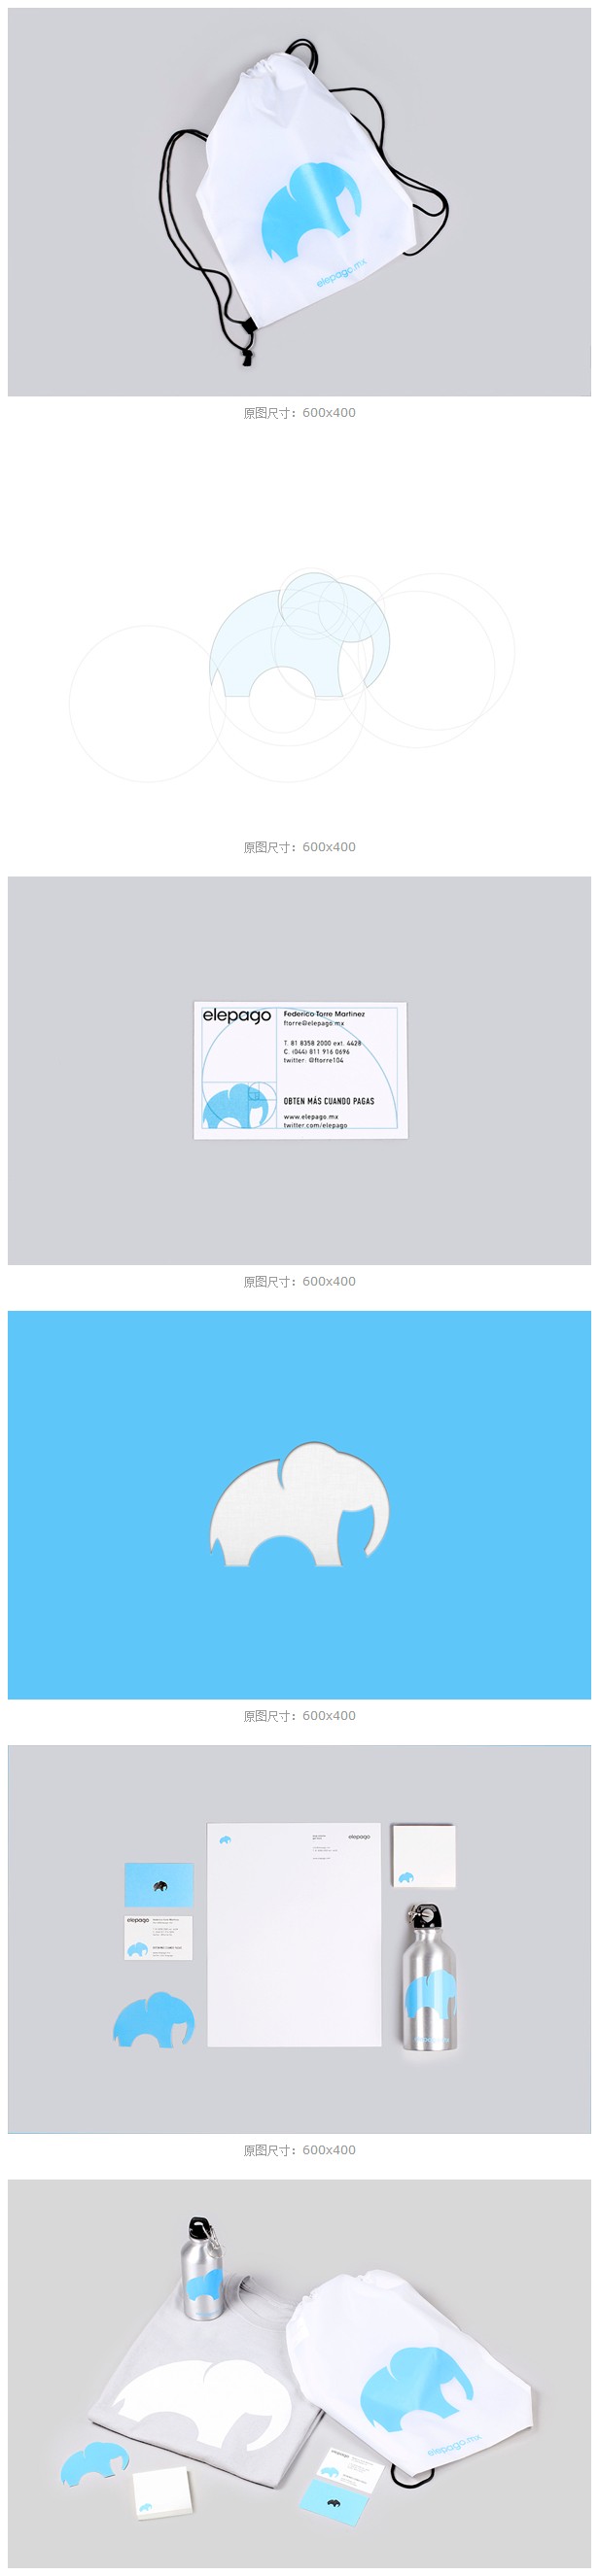 Elepago简洁扁平的企业VI视觉设计展示